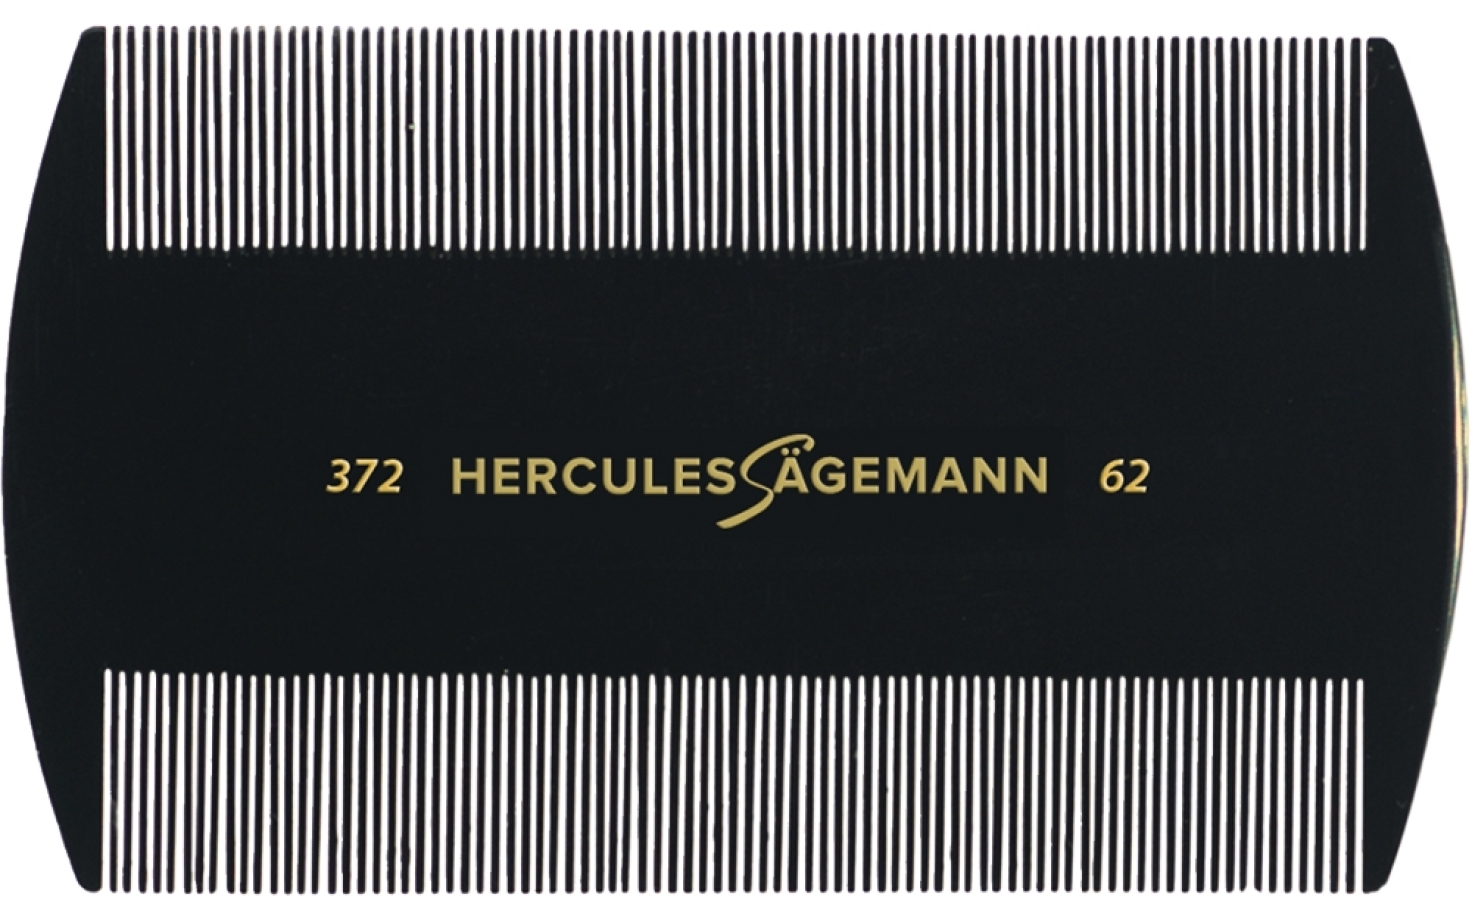 Hercules Sägemann Staubkamm 372/3.5 62/3.5